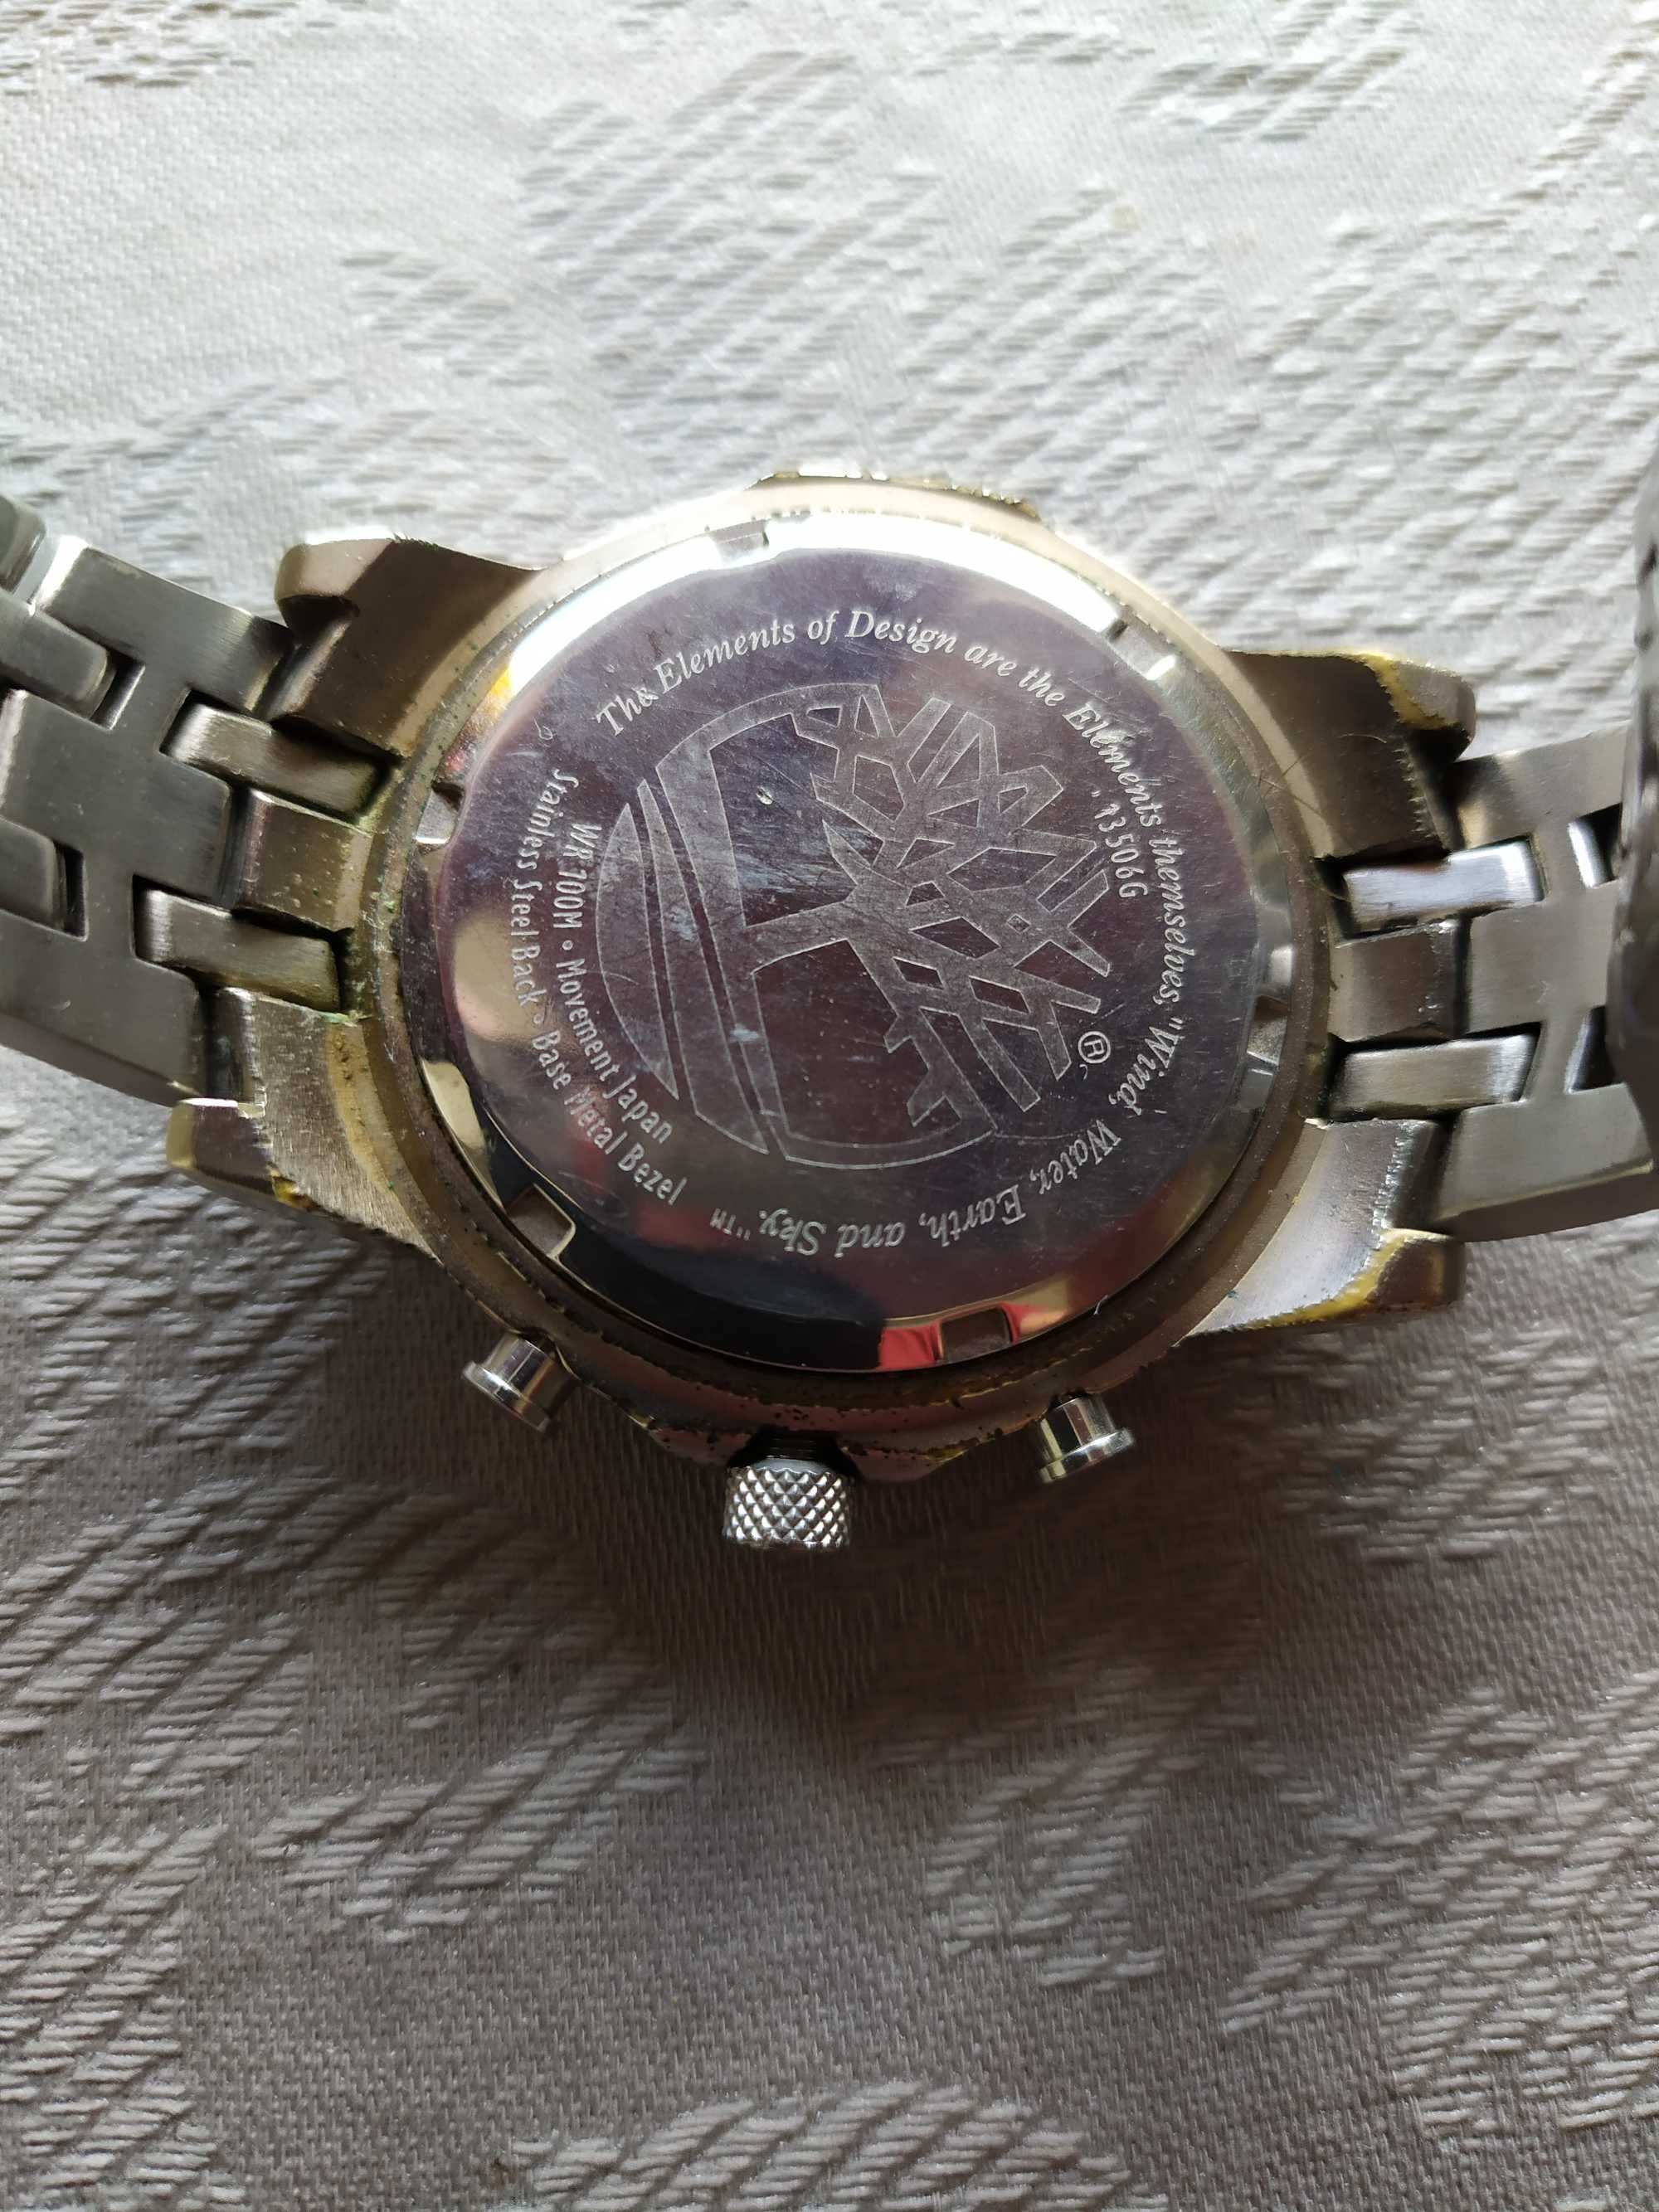 Relógio Timberland, bracelete metálica, usado mas em bom estado